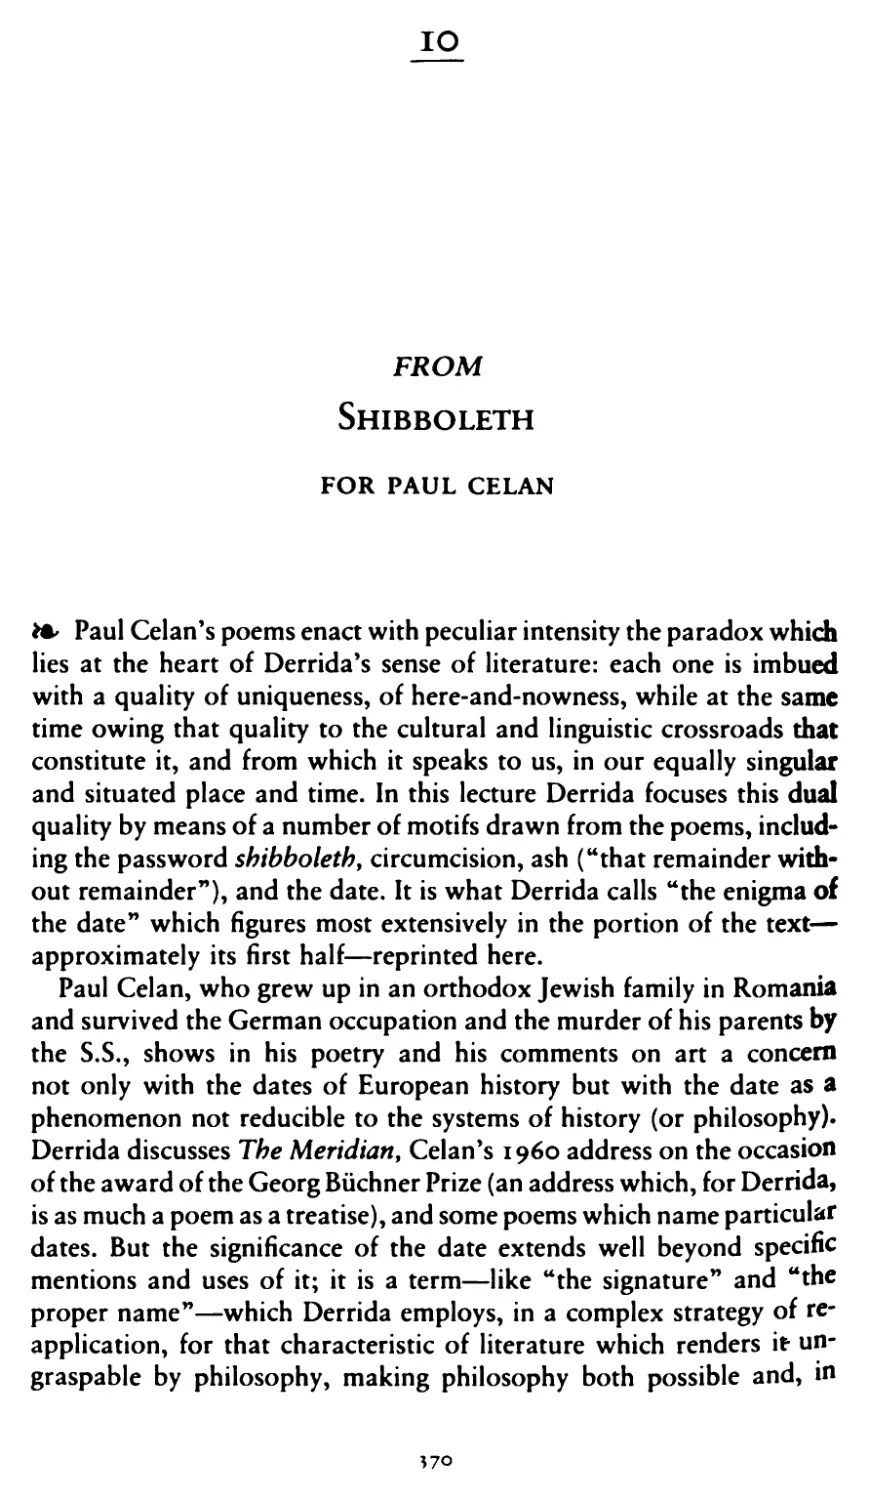 10.From Shibboleth: For Paul Celan